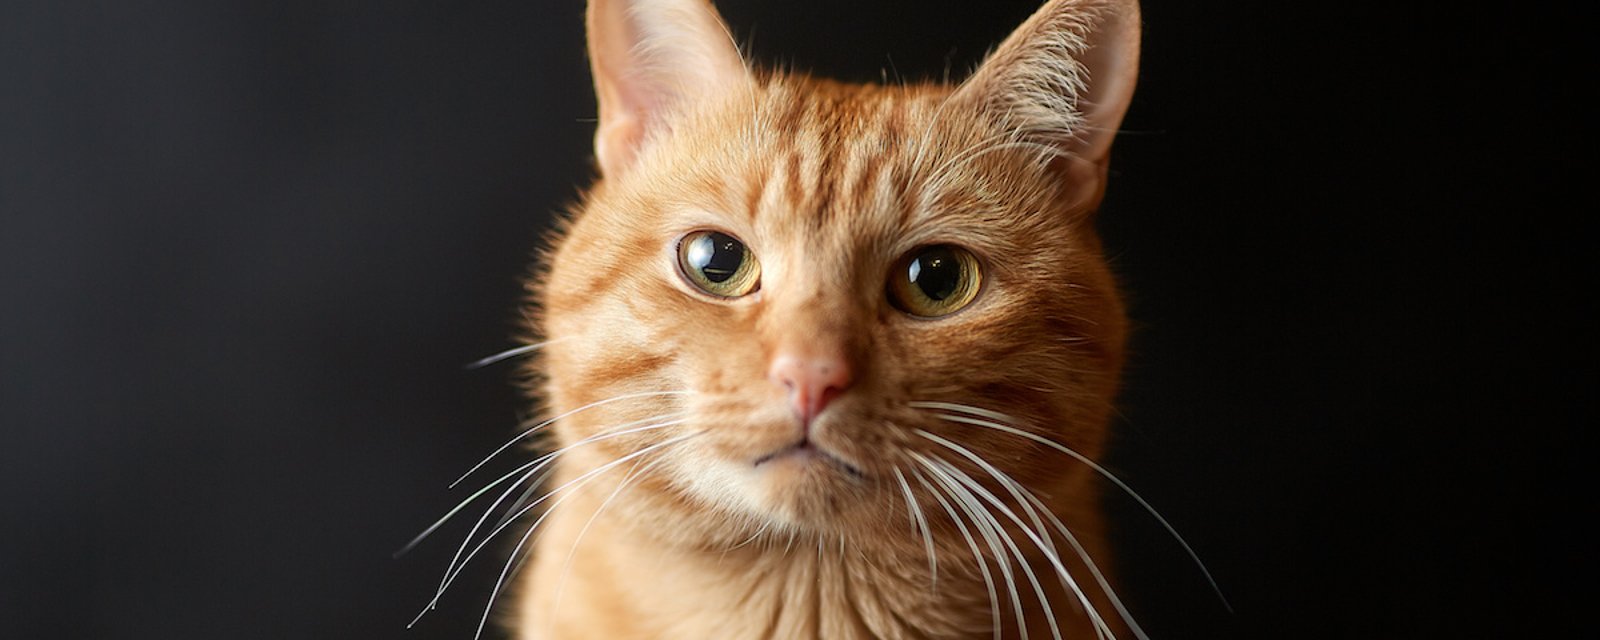 La science démontre que les humains ne sont pas doués pour décrypter les expression faciales des chats